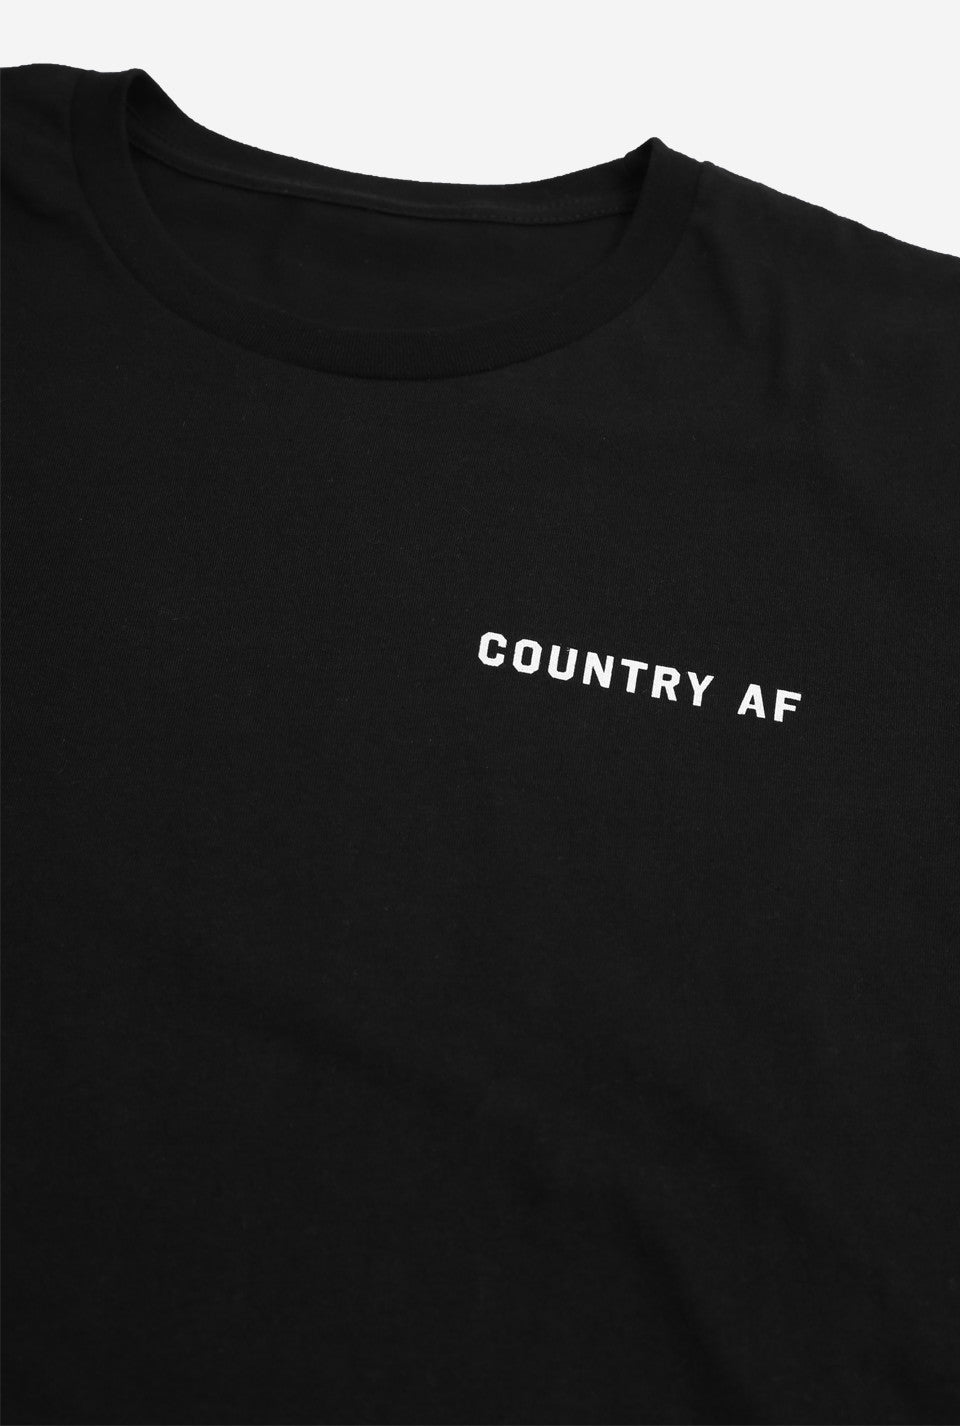 Country AF Crewneck - Black